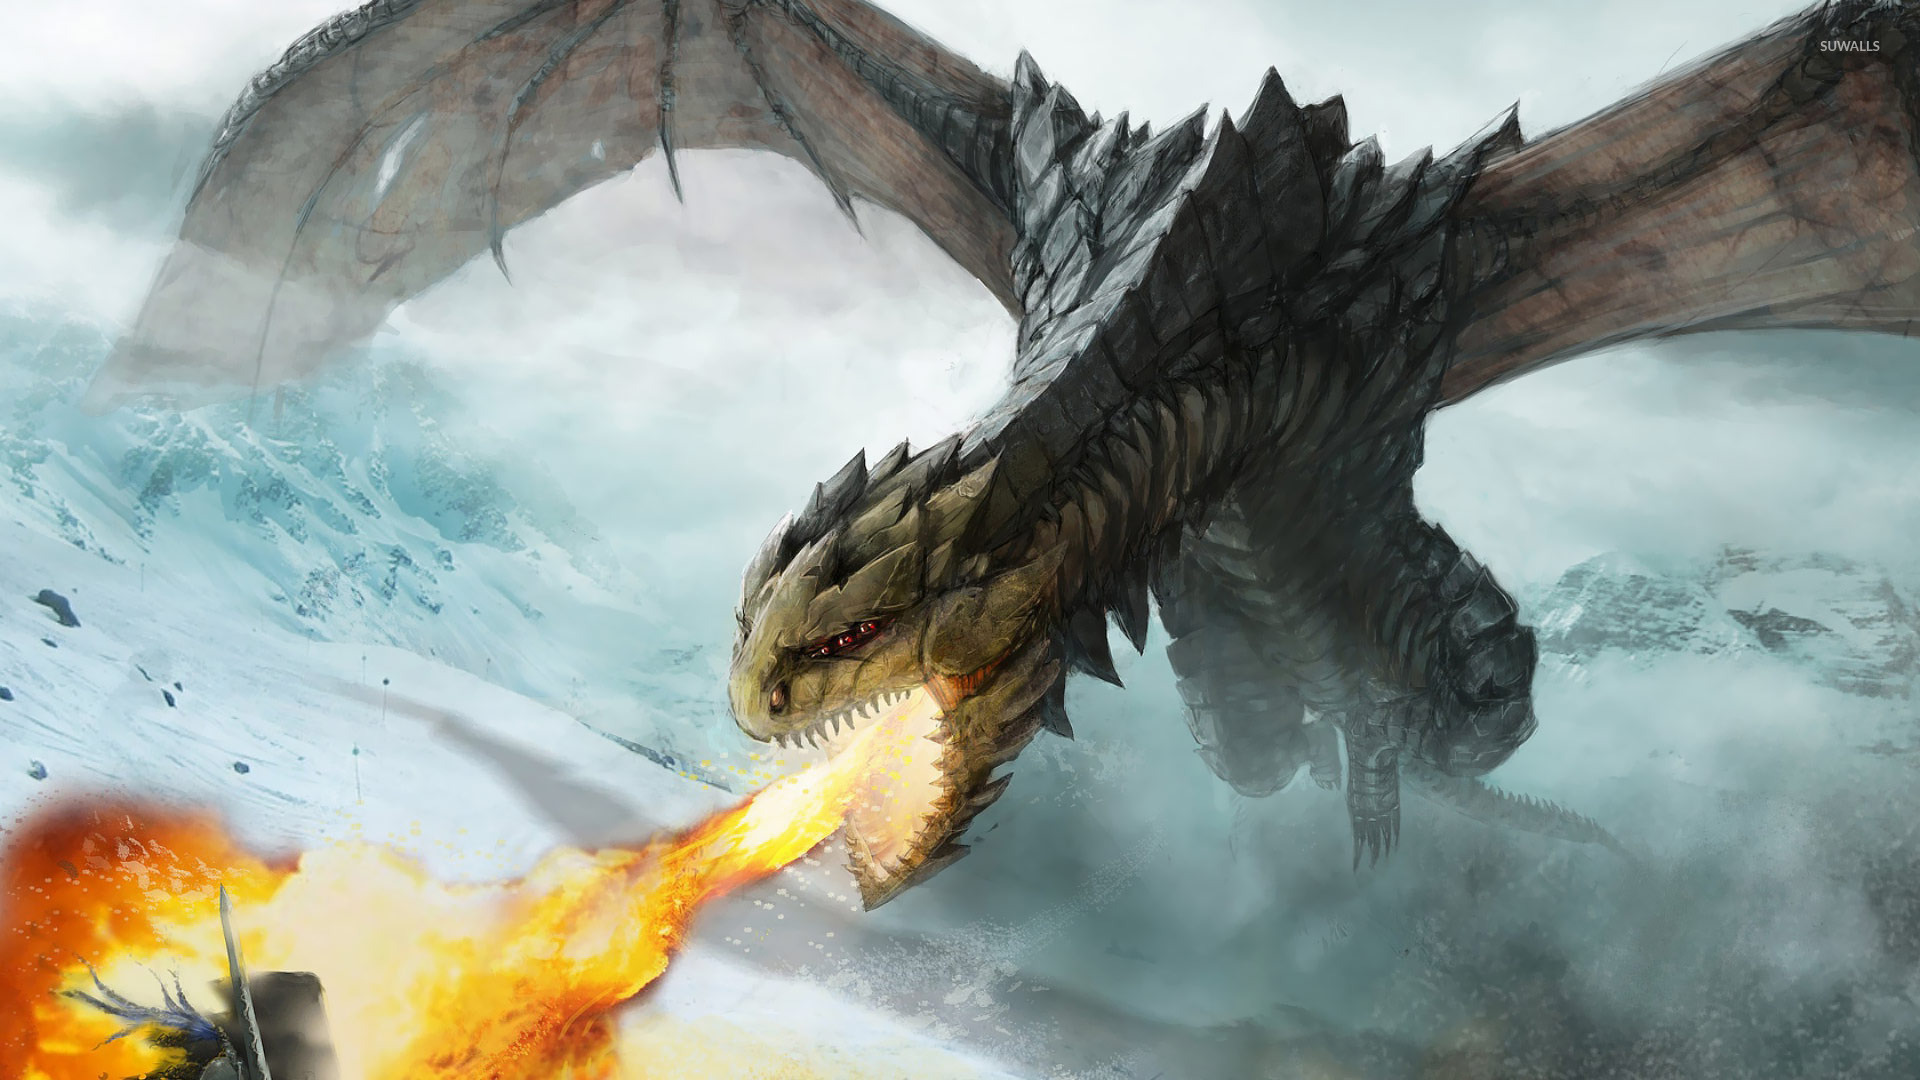 Fire Breathing Dragon Fight - HD Wallpaper 